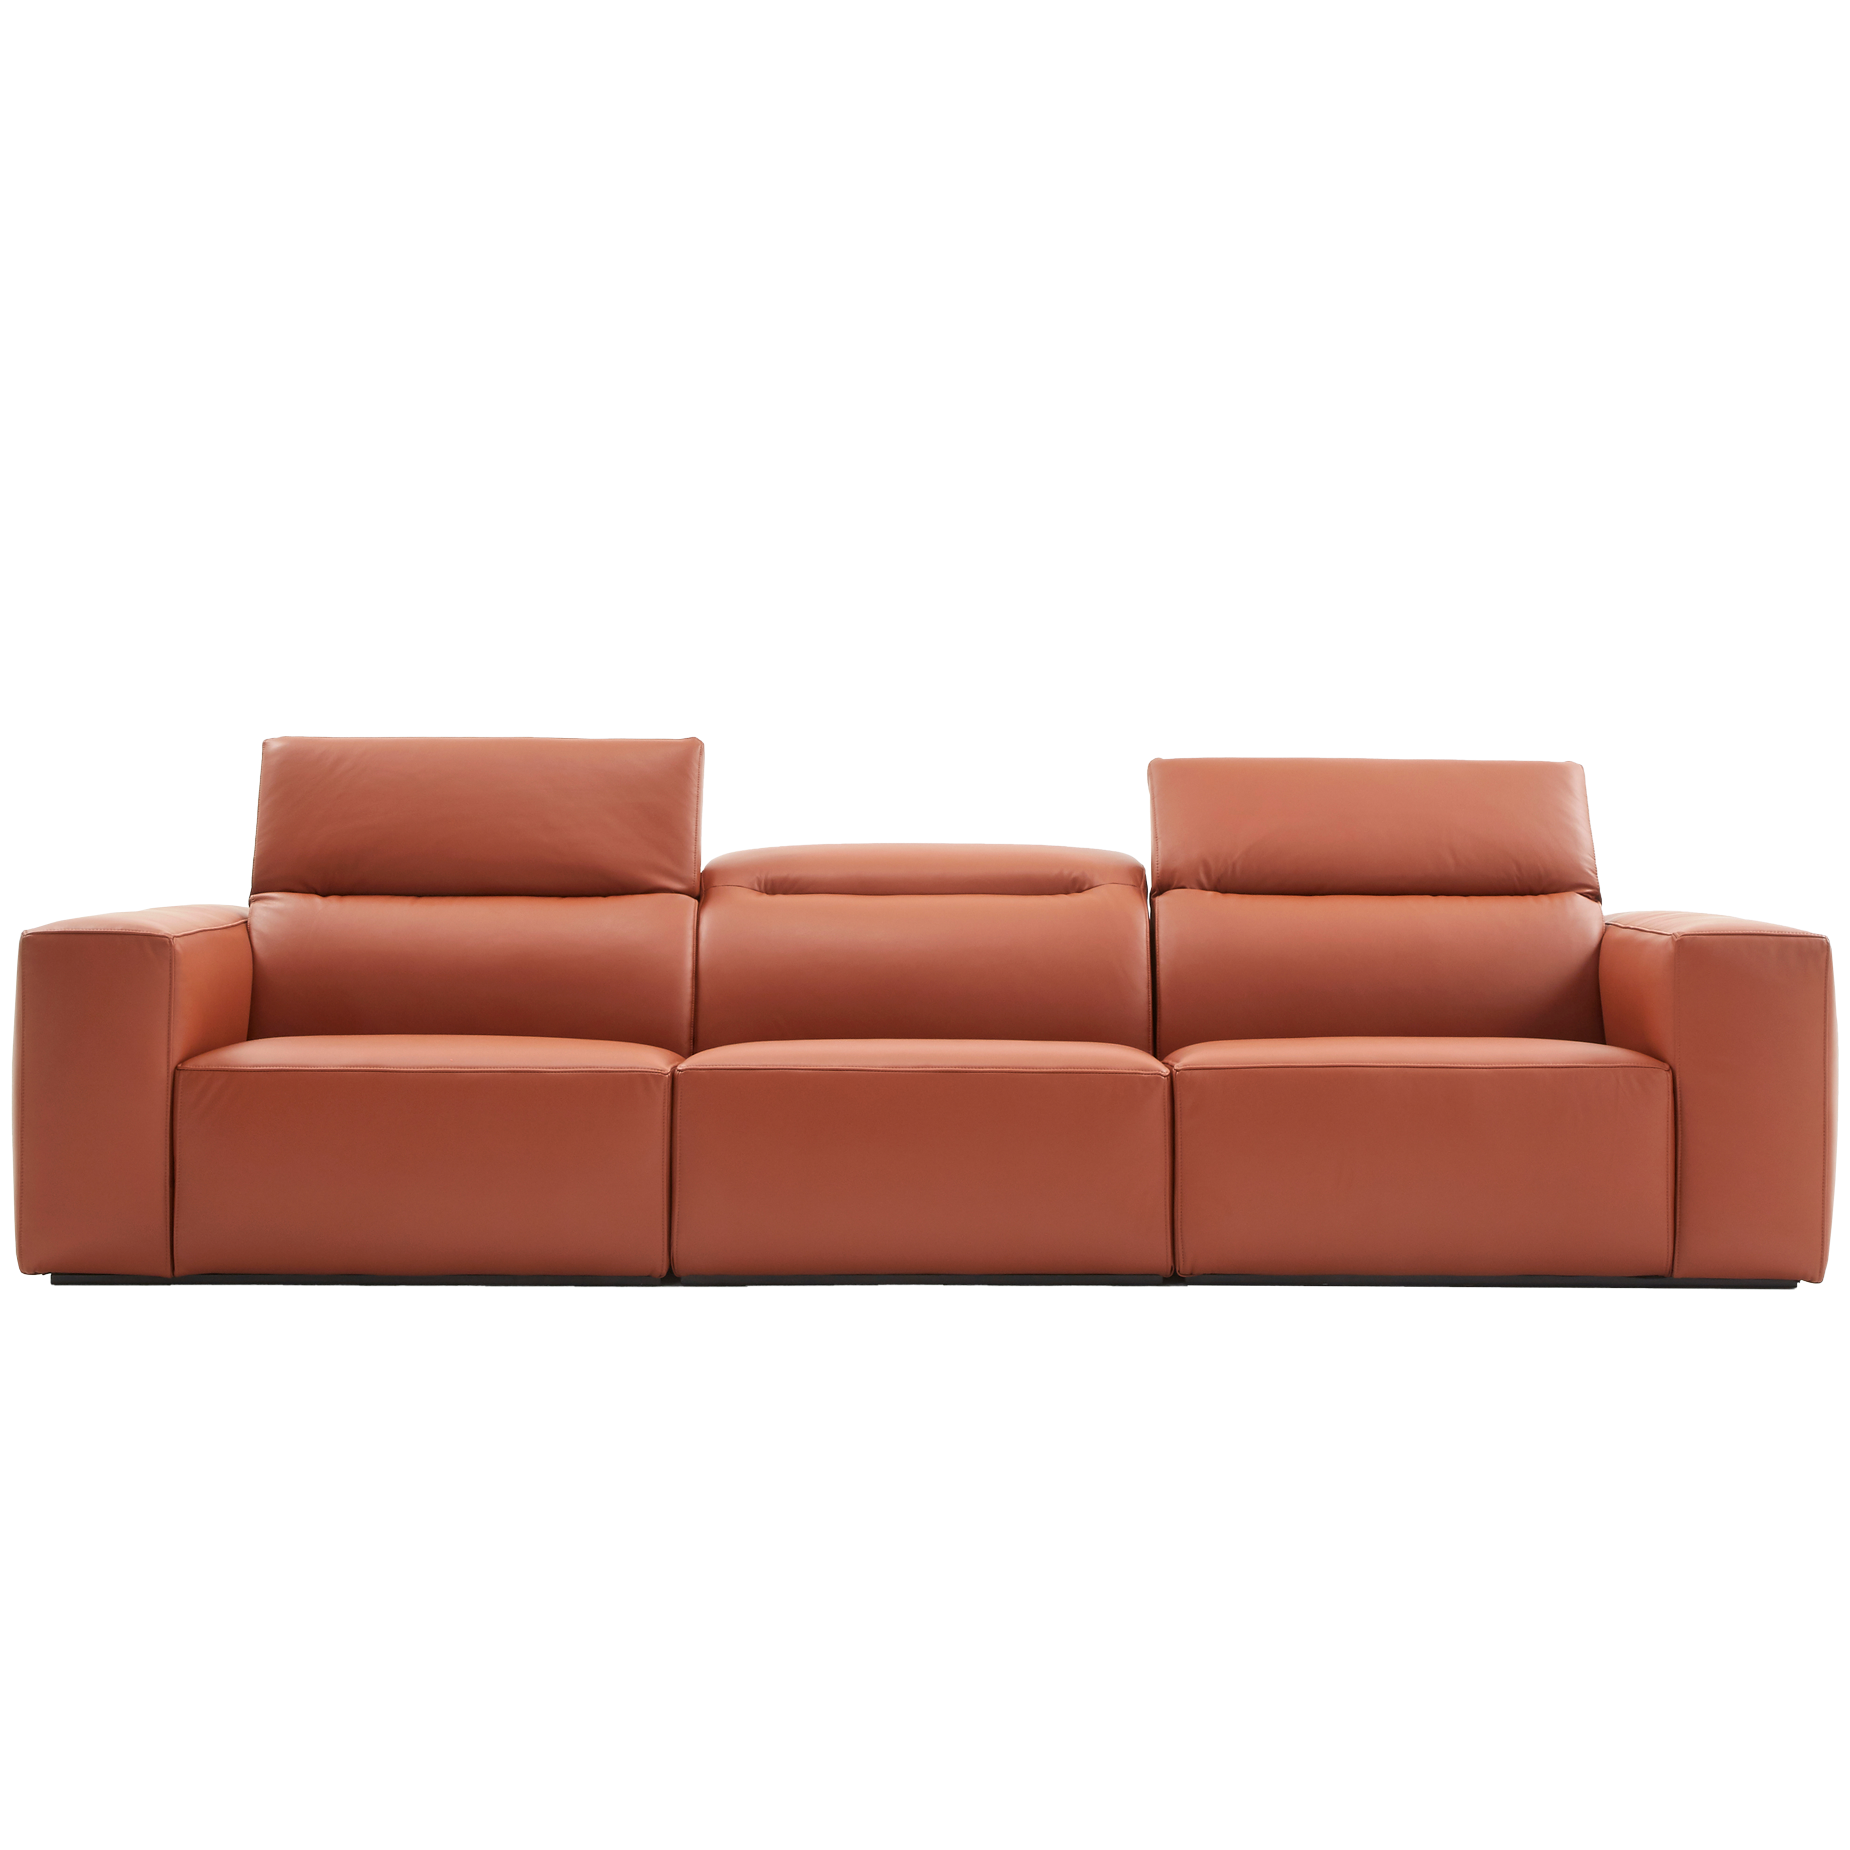 (주)도이치   DOICH ®    PEN1 modular sofa 도이치 펜1 모듈 4인소파